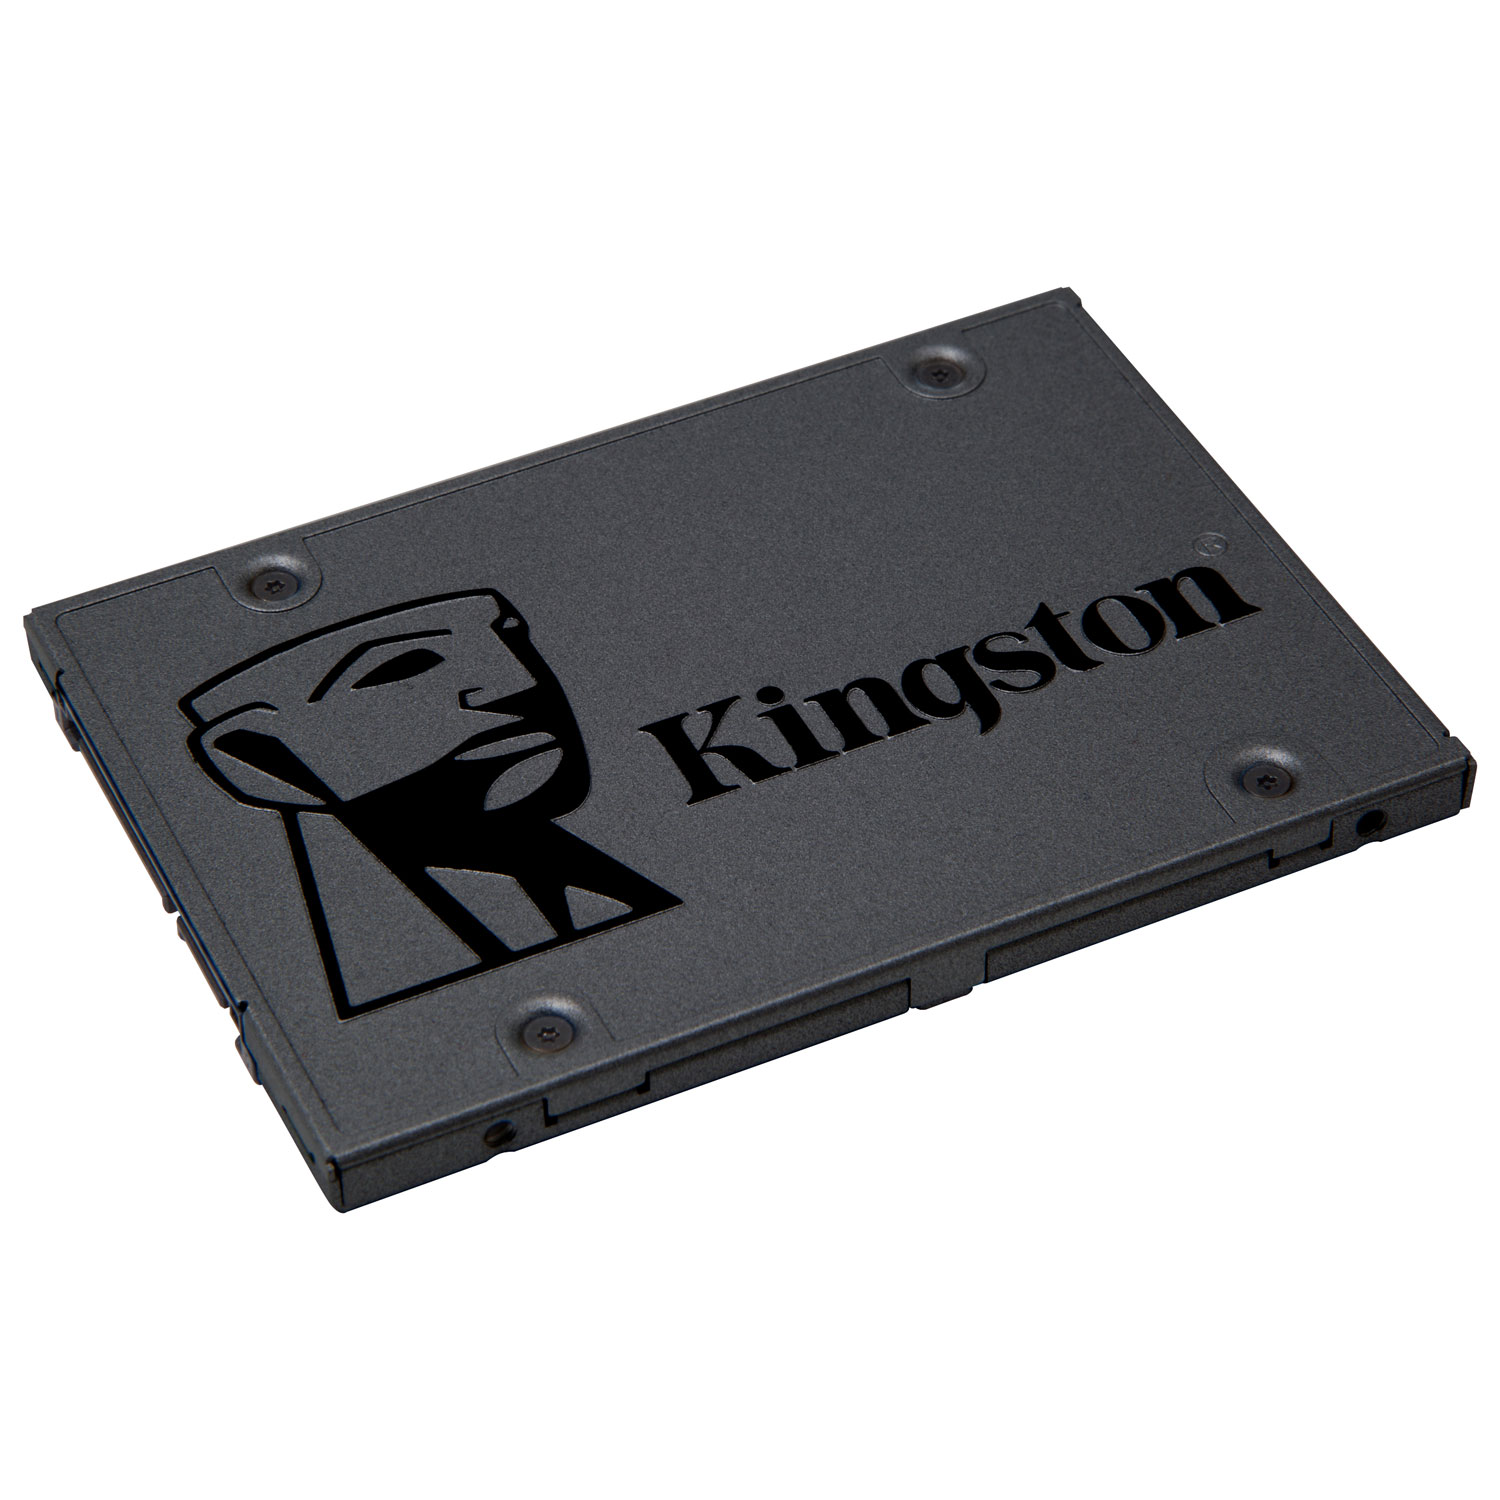 Kingston 960GB SATA III Internal Solid State Drive (SA400S37/960G)